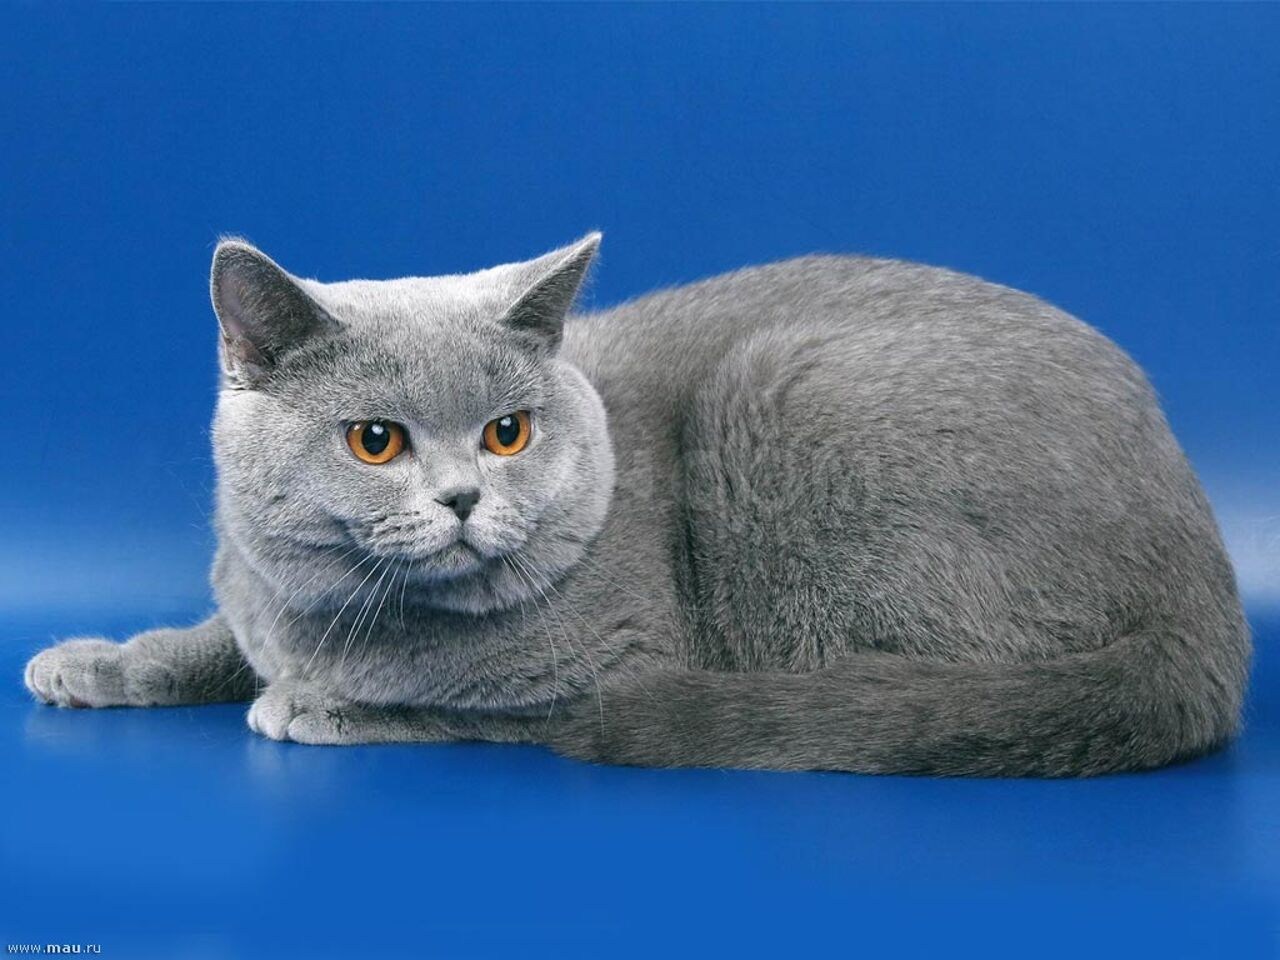 Фотографии породы британских кошек. Кот породы британец. Британская короткошёрстная кошка. Британская короткошёрстная кошка голубая. Британский короткошерстный кот серый.